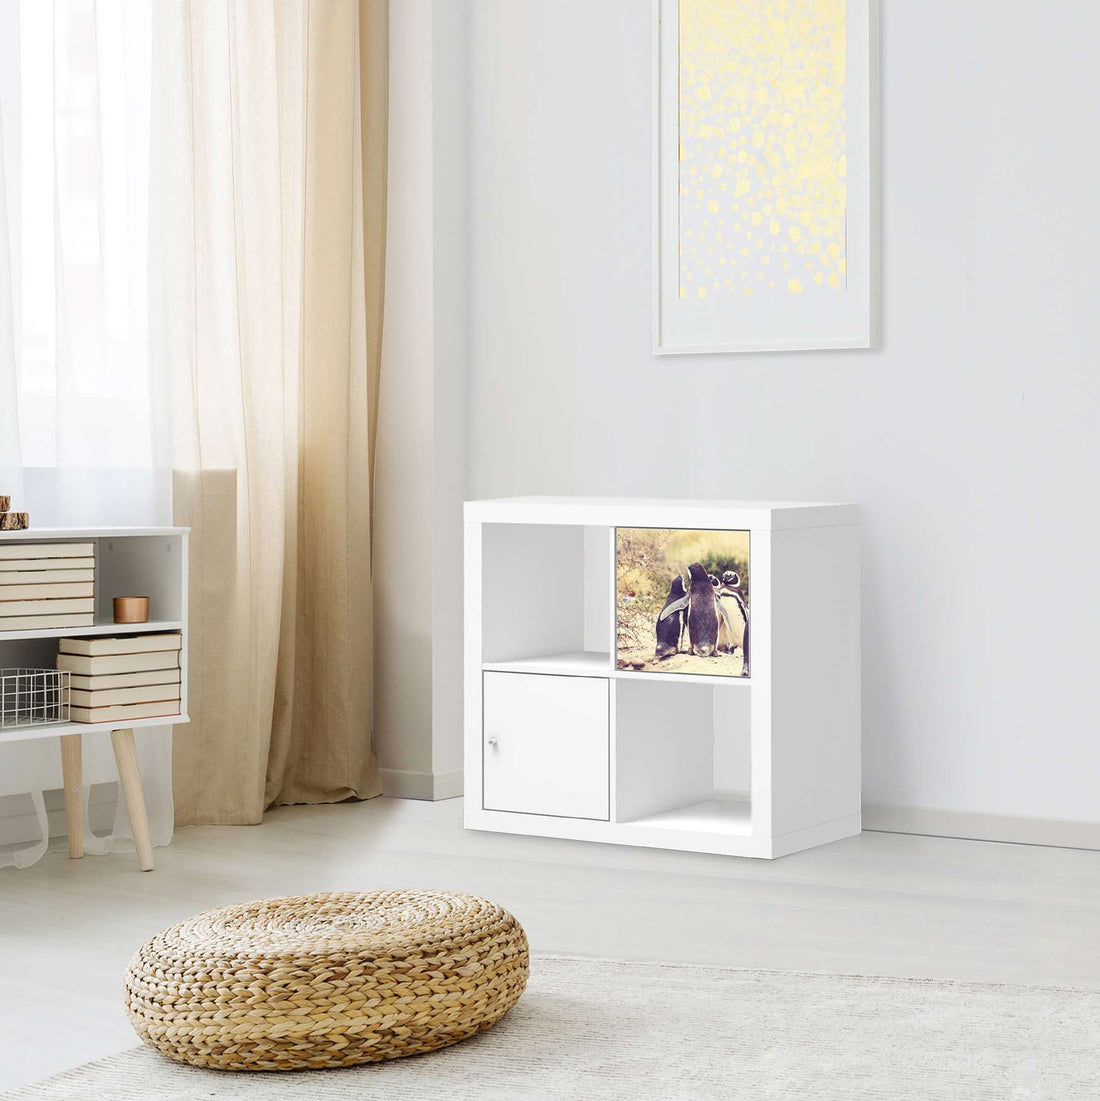 Selbstklebende Folie Pingu Friendship - IKEA Kallax Regal 1 Türe - Wohnzimmer